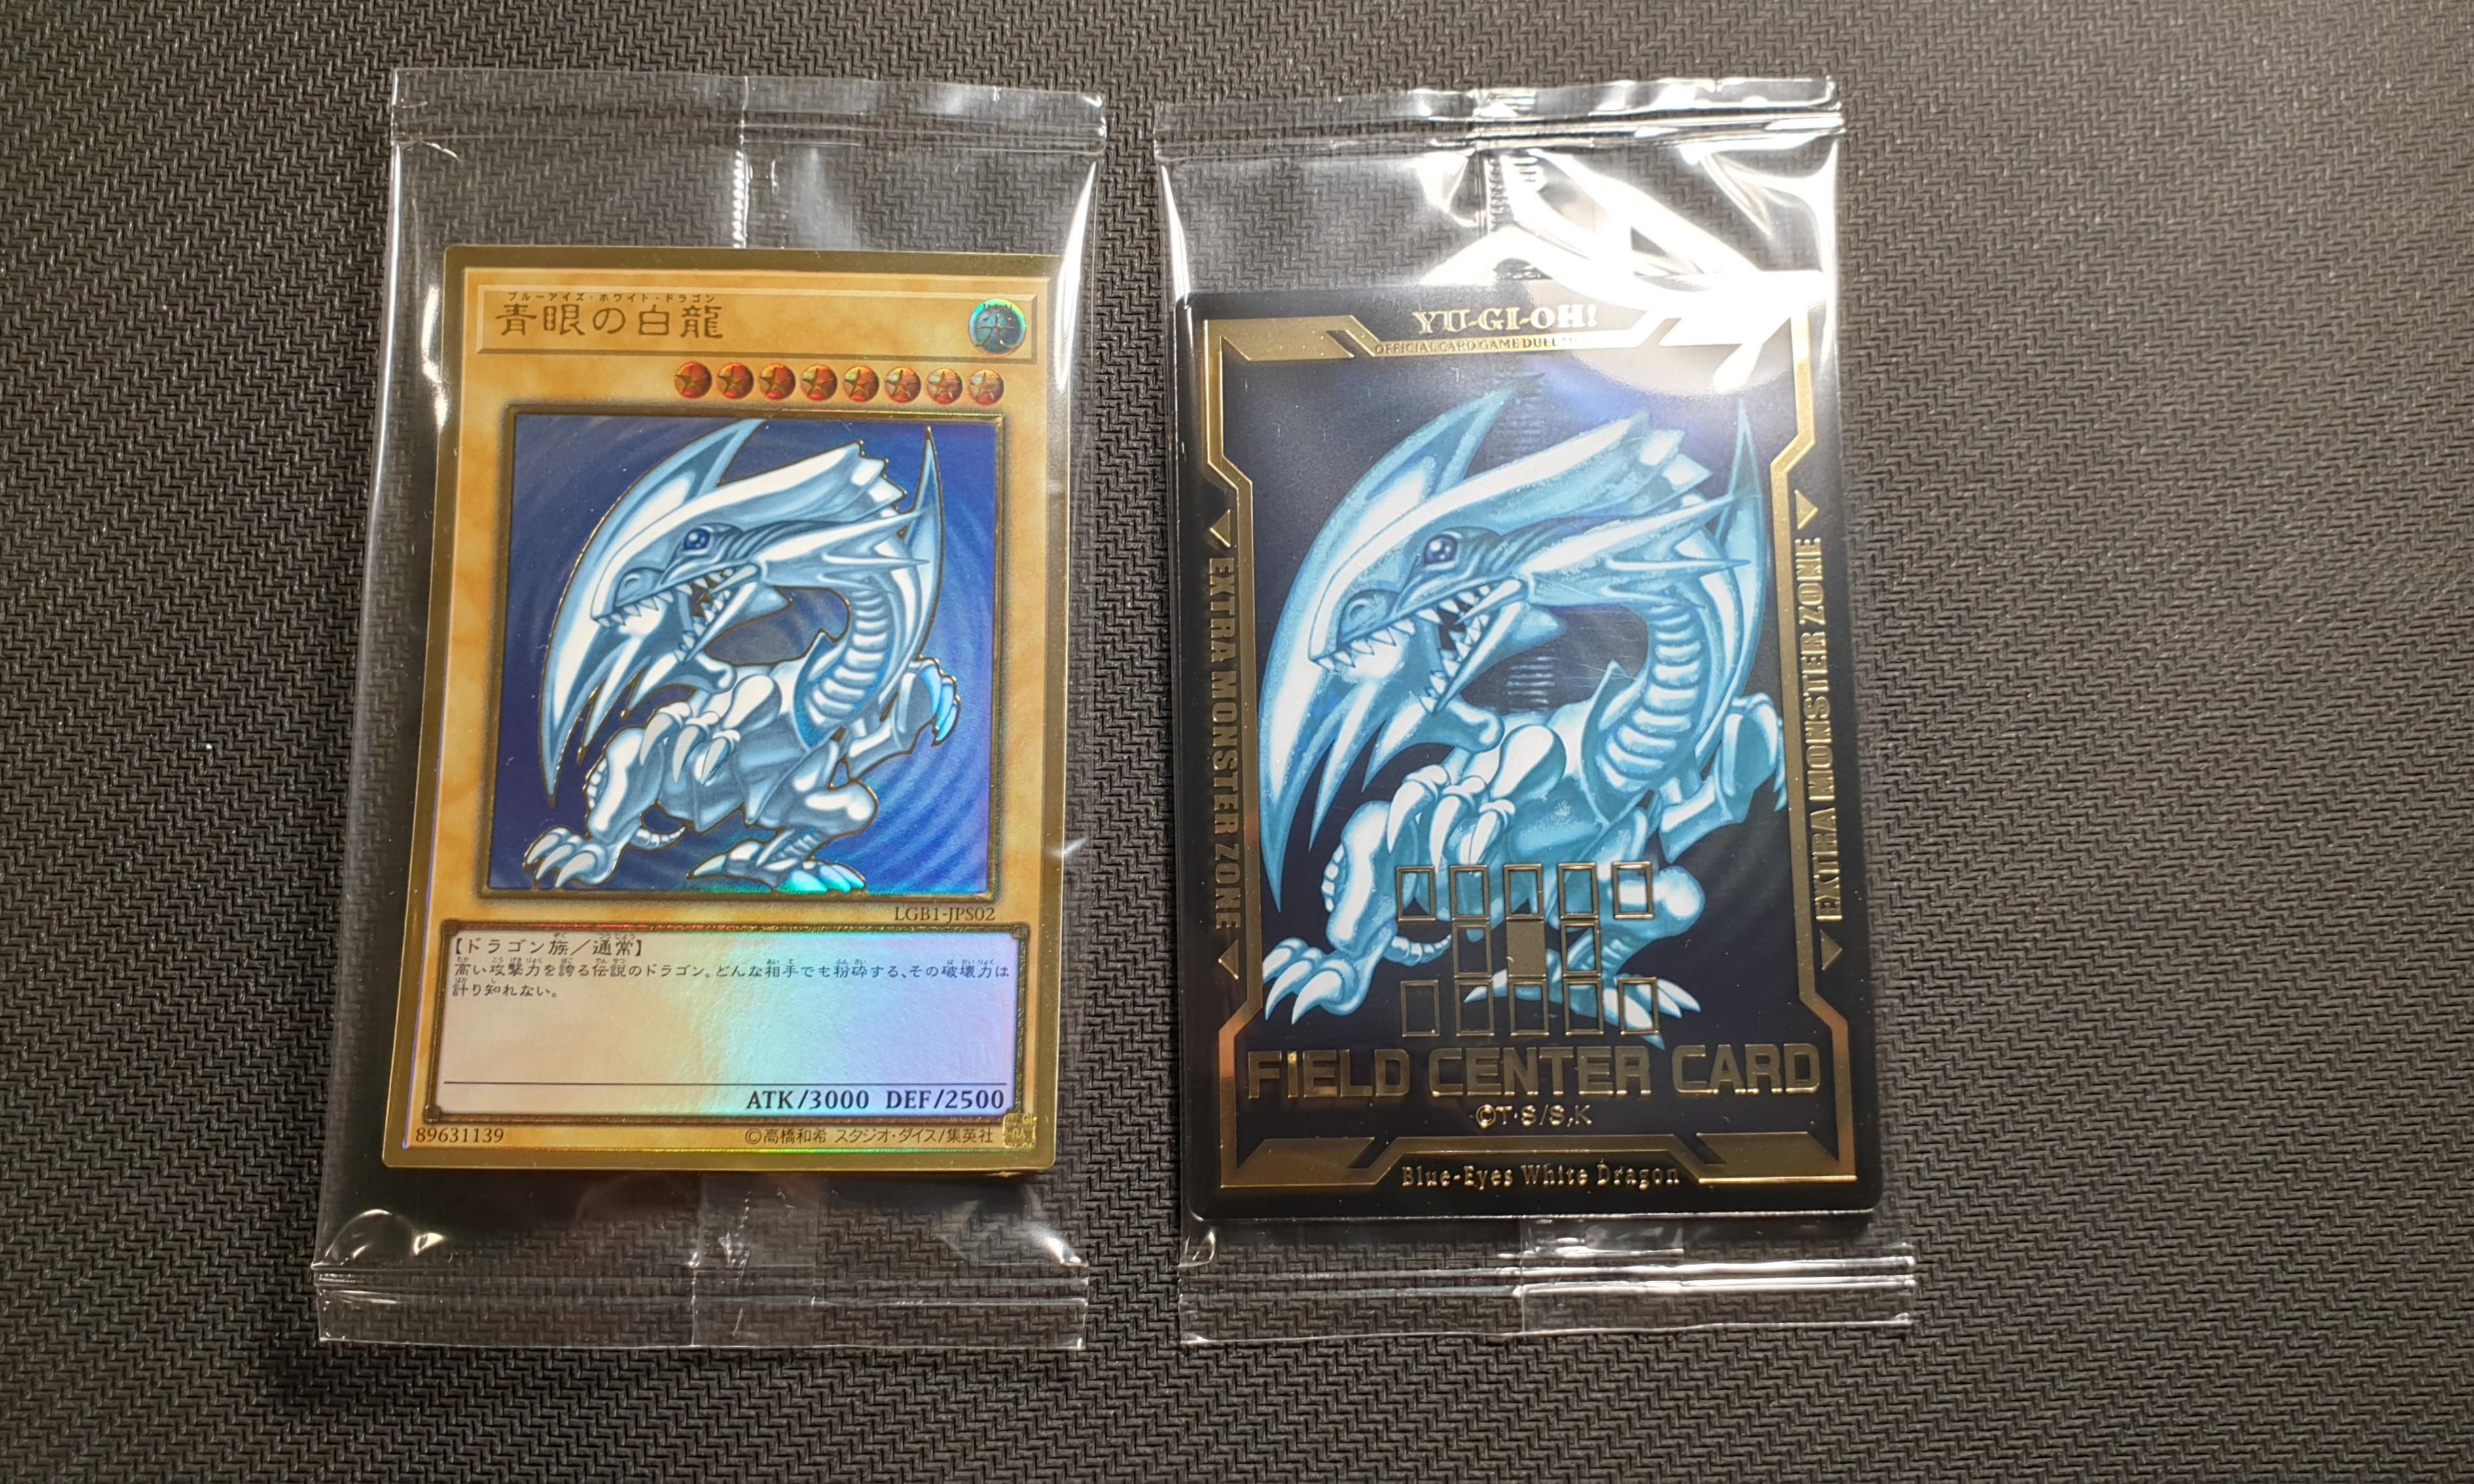 Japanese Yugioh Blue-Eyes White Dragon Field Center Card Legendary Gold Box